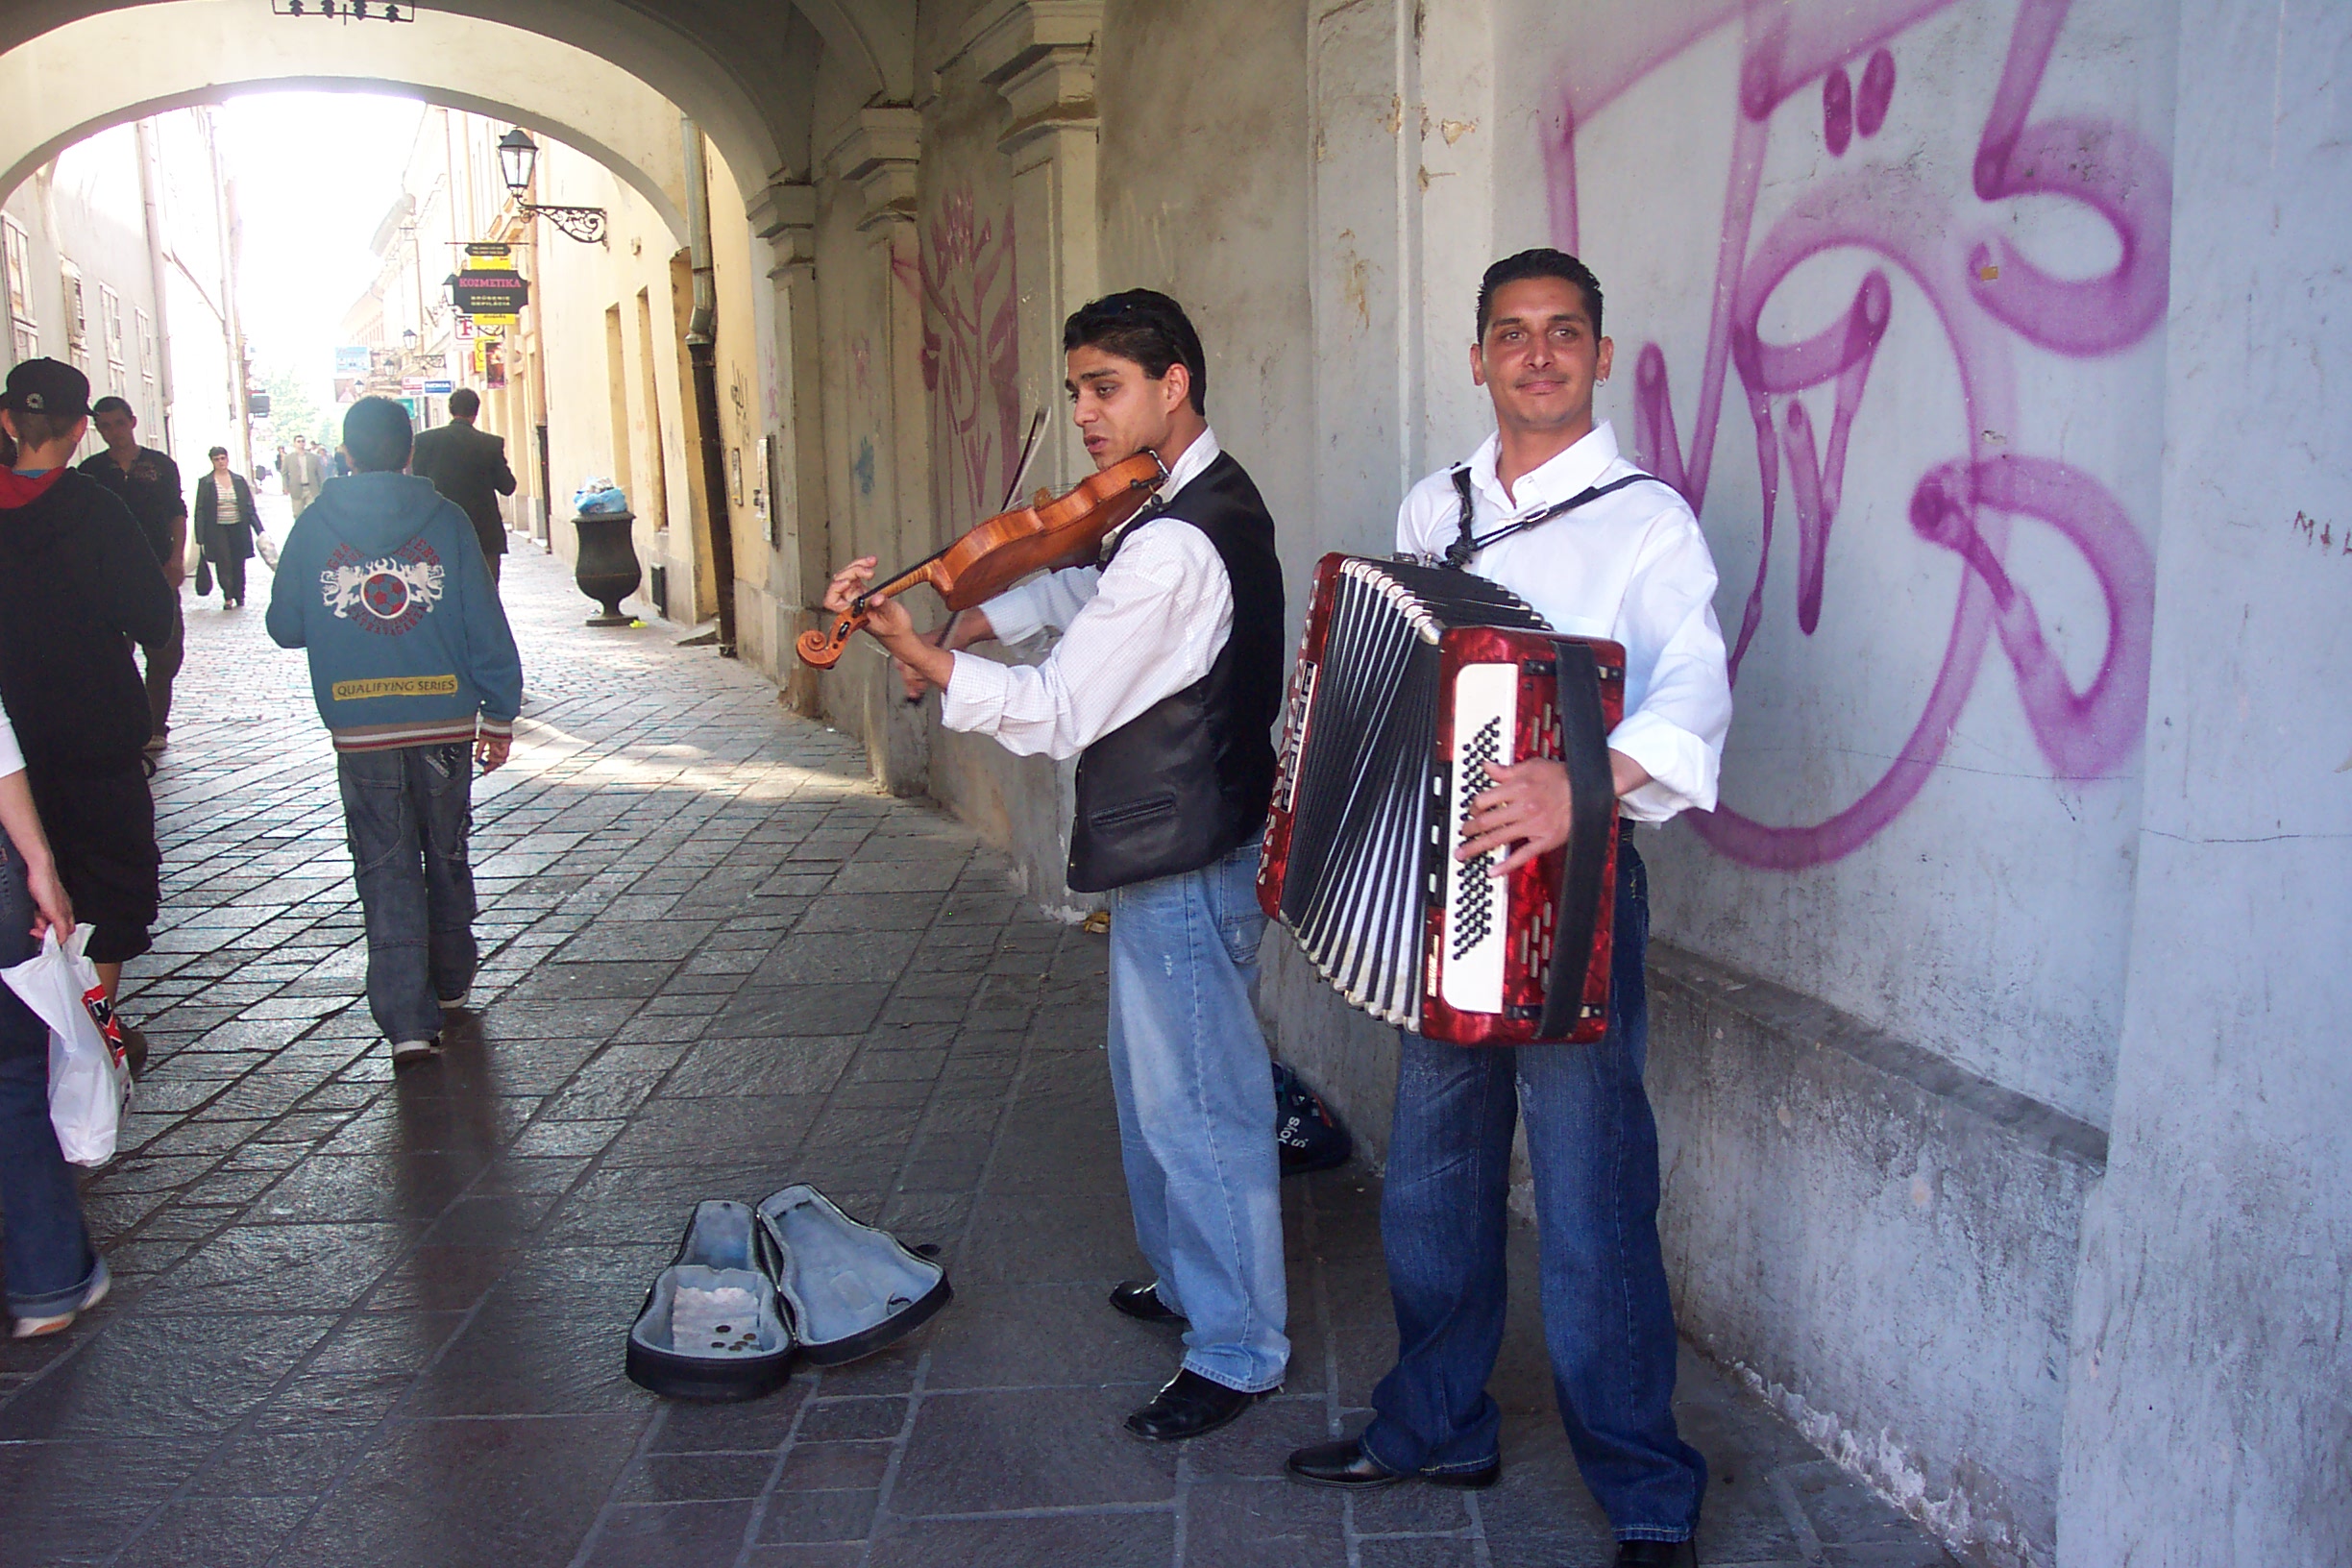 Roma musicians in Presov